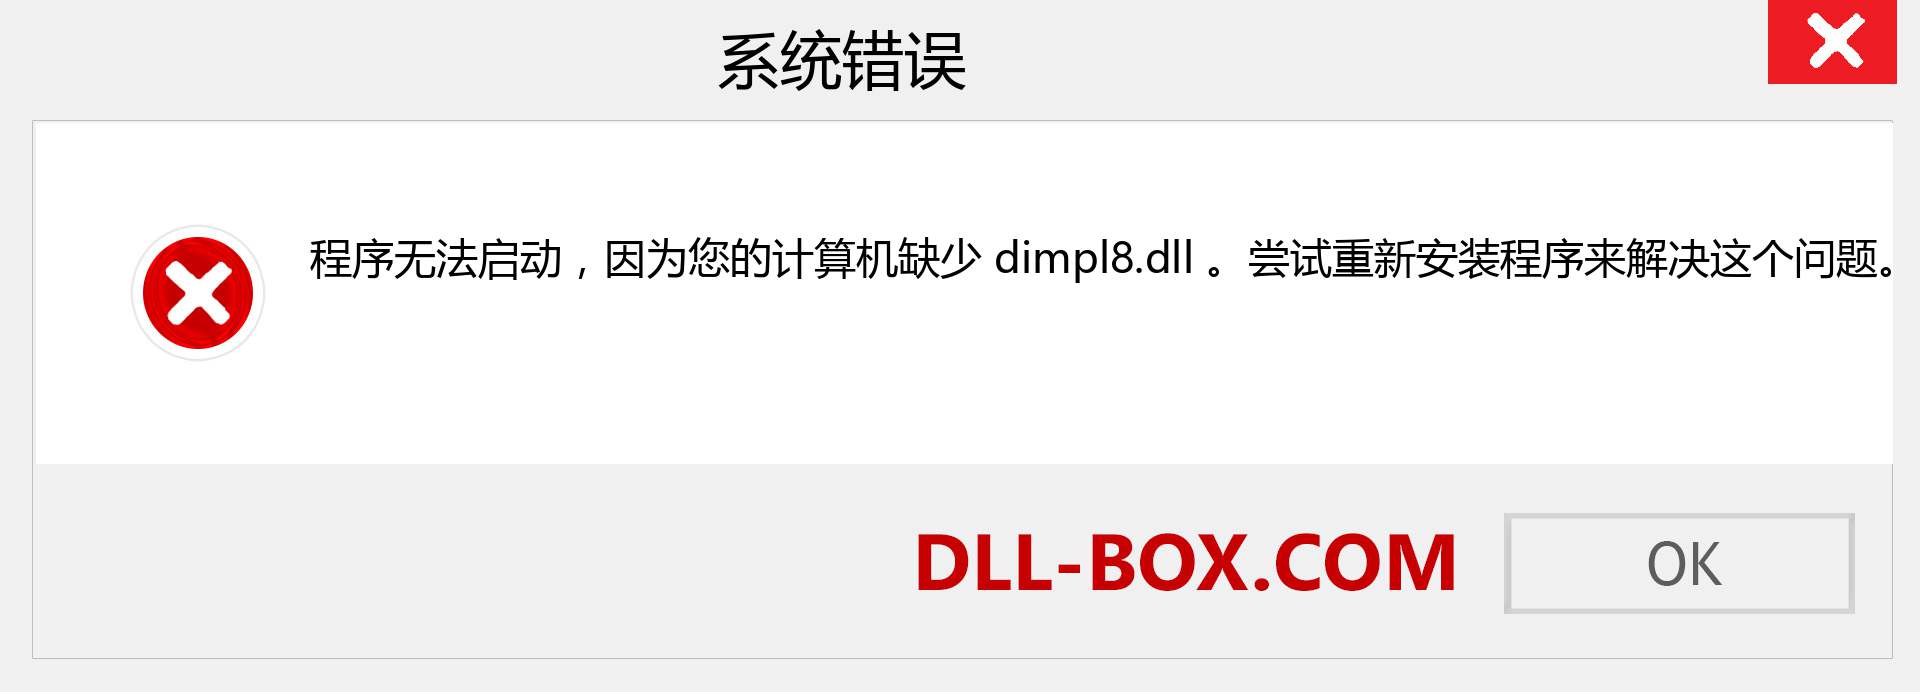 dimpl8.dll 文件丢失？。 适用于 Windows 7、8、10 的下载 - 修复 Windows、照片、图像上的 dimpl8 dll 丢失错误